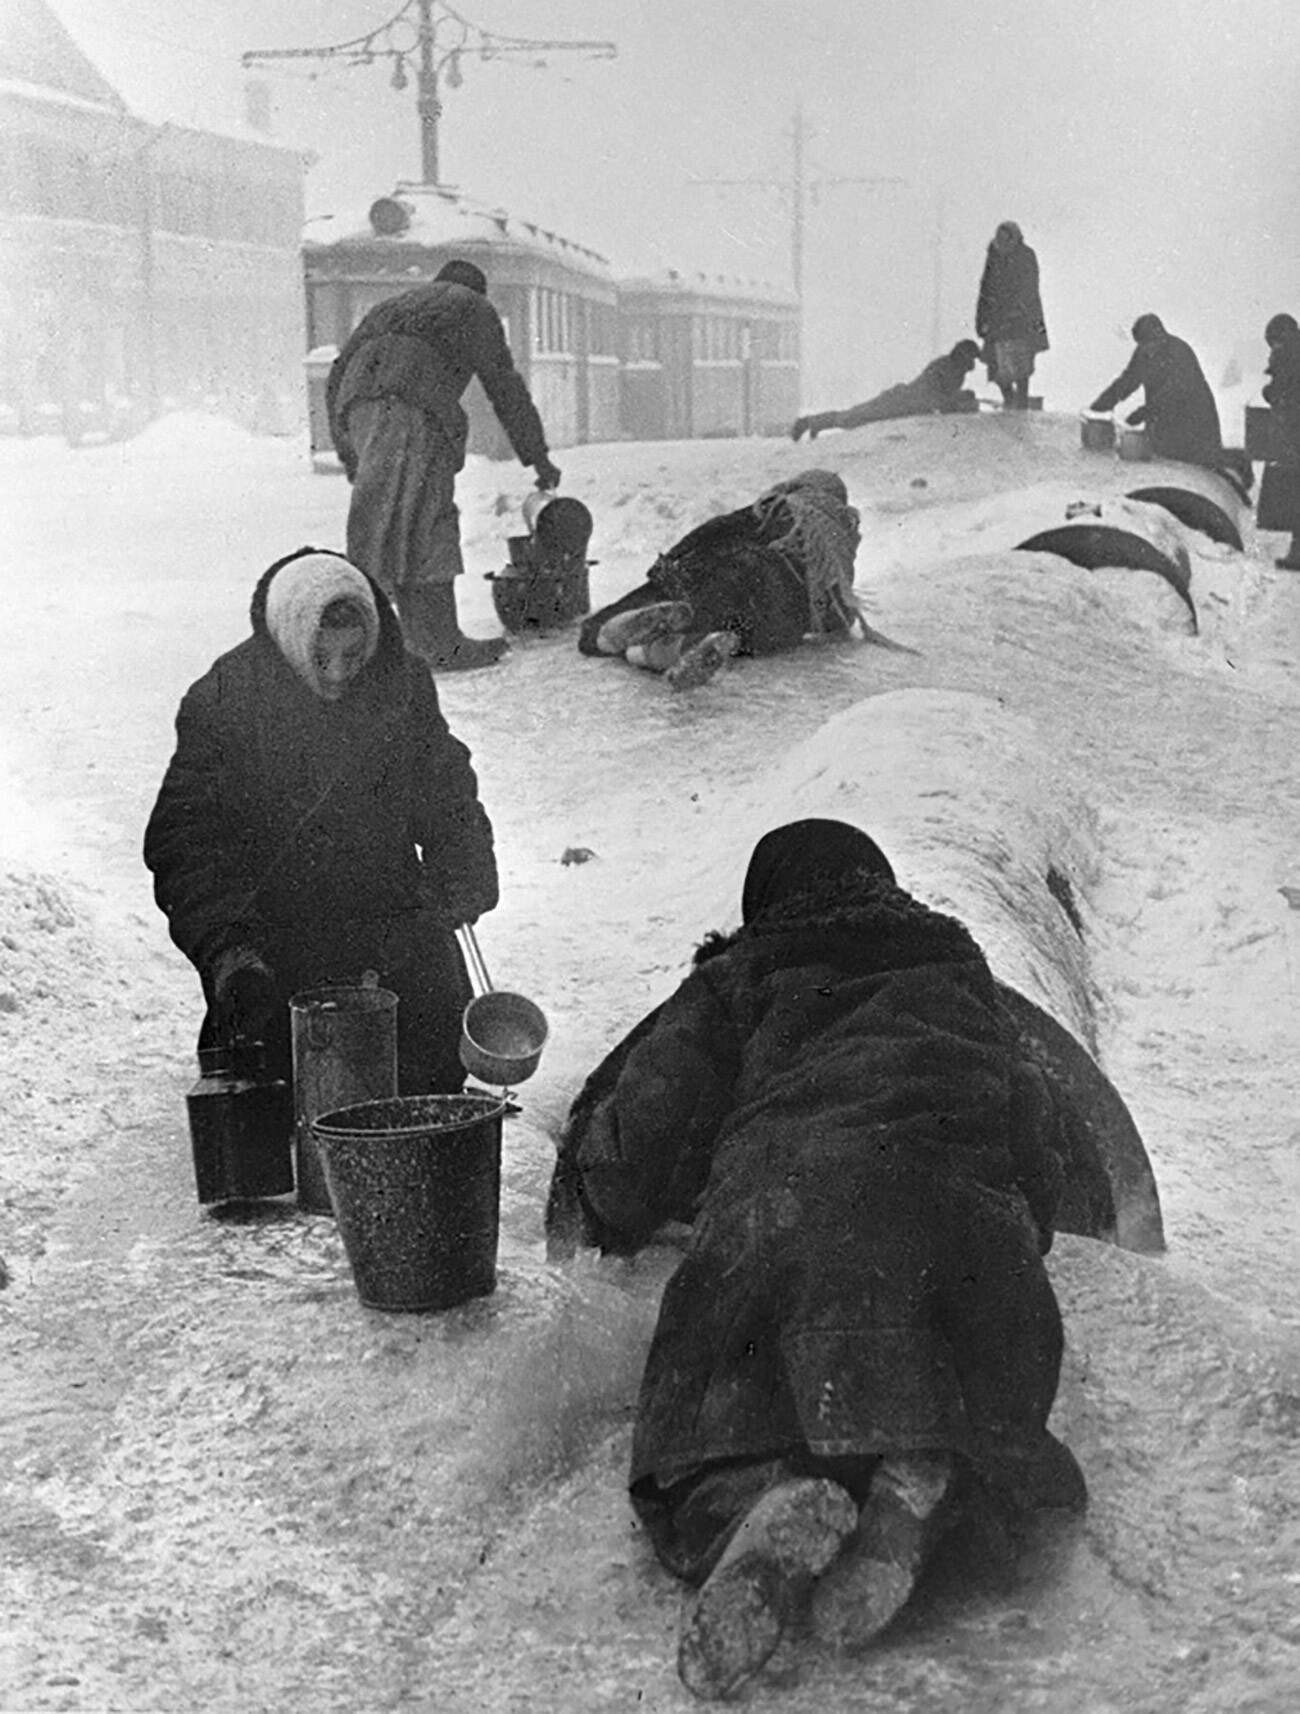 Vecinos de Leningrado sacan agua de una tubería rota en una calle helada.
